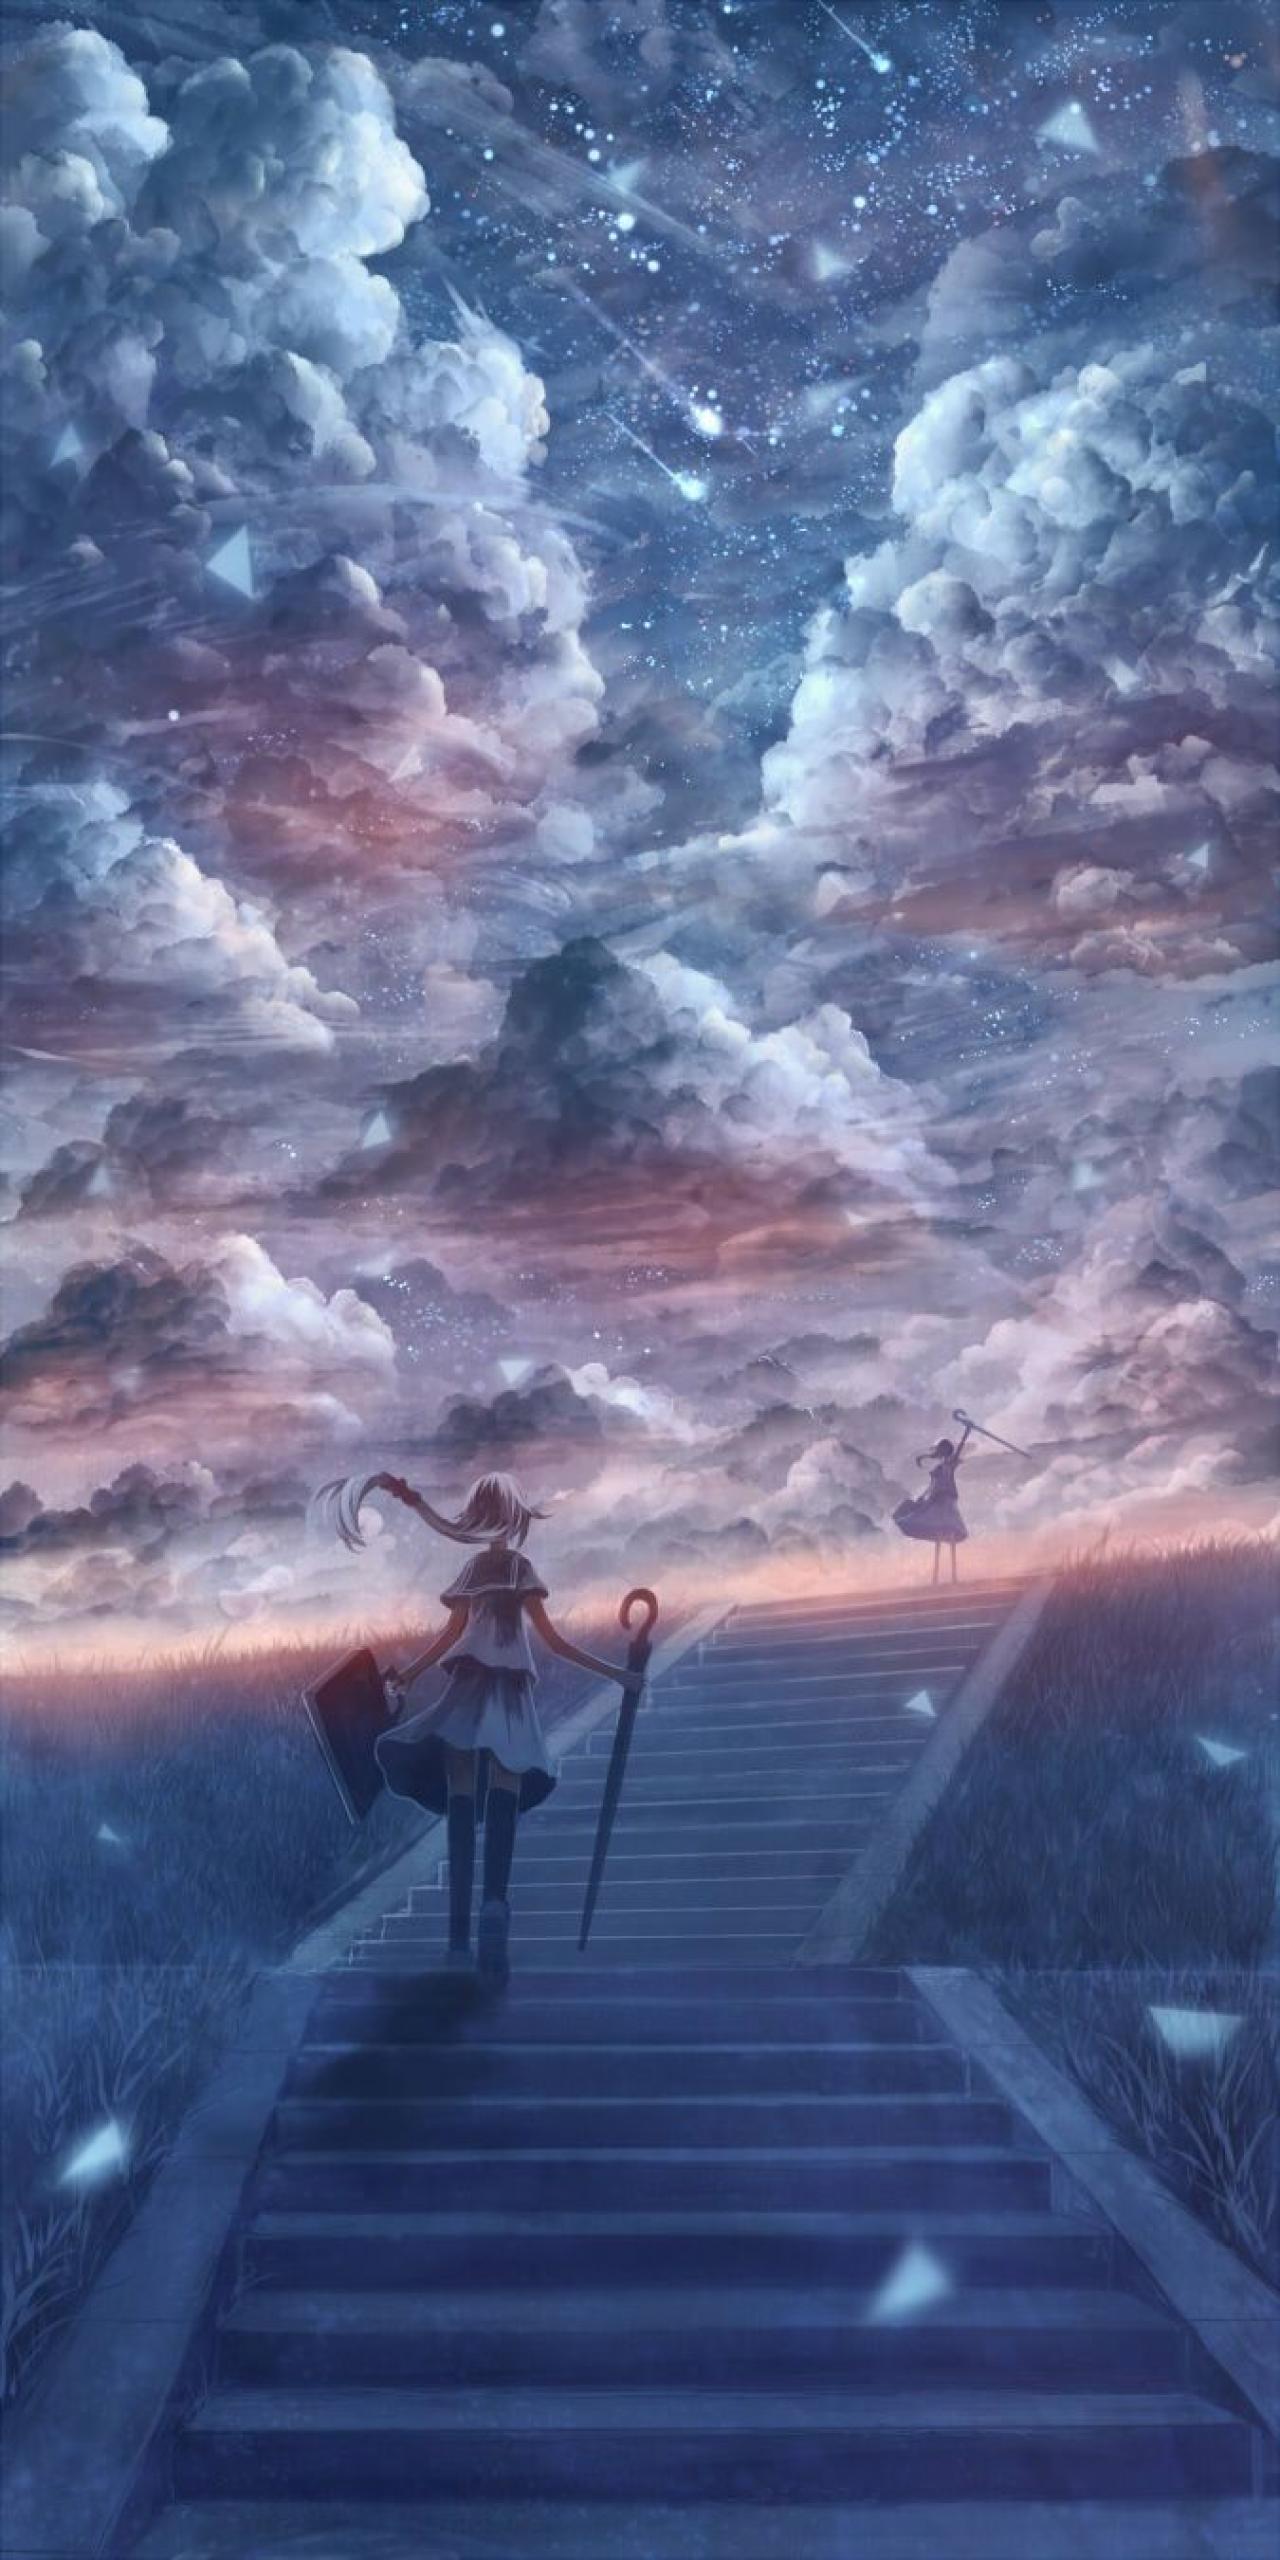 浩瀚星空下，撑伞的女孩走着台阶，在台阶的另一端依稀可见自己的梦想。